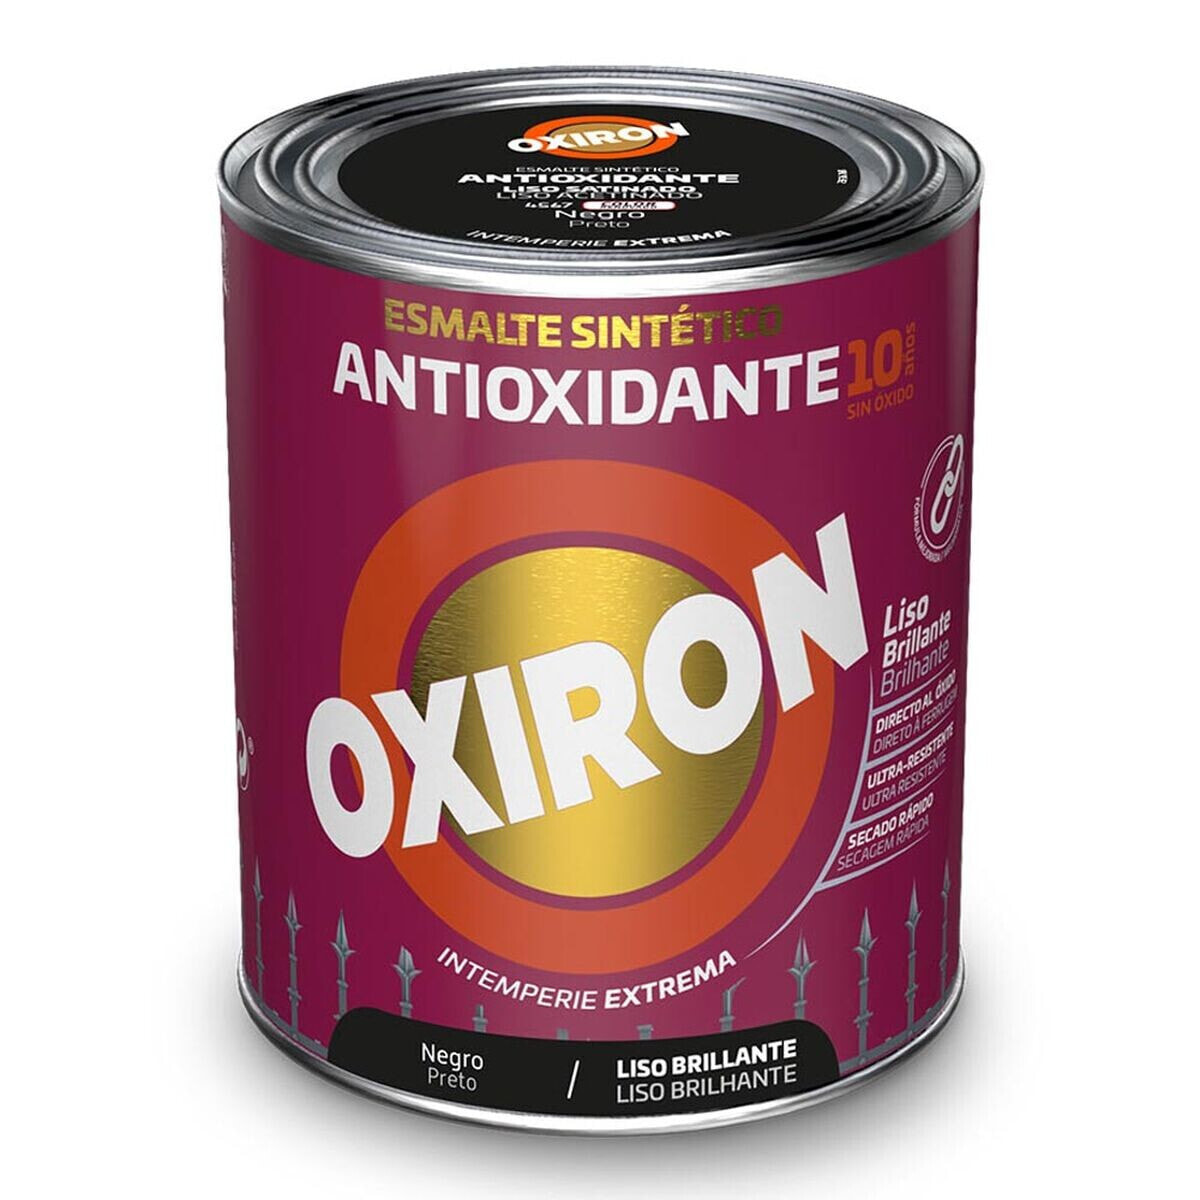 Синтетическая эмаль Oxiron Titan 5809080 250 ml Чёрный антиоксидантами